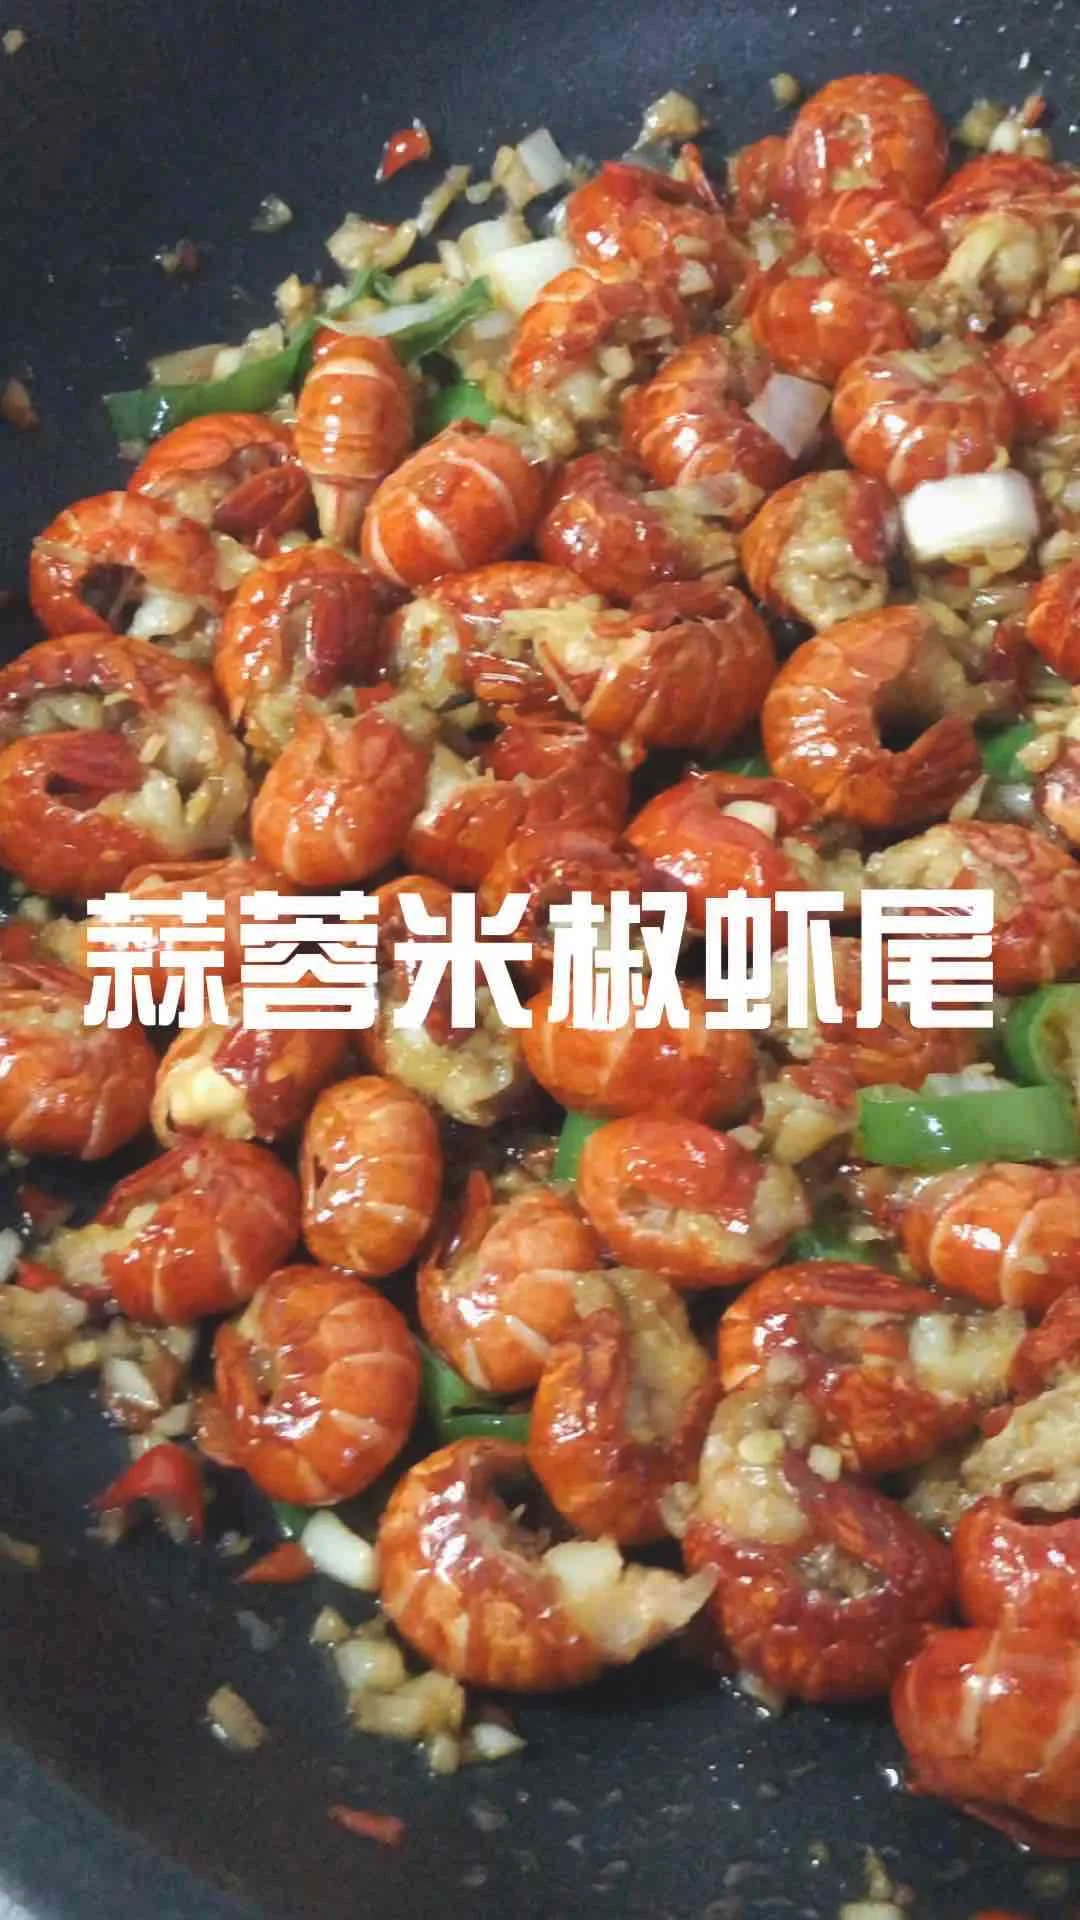 蒜蓉米椒虾尾的做法-蒜香味烧菜谱